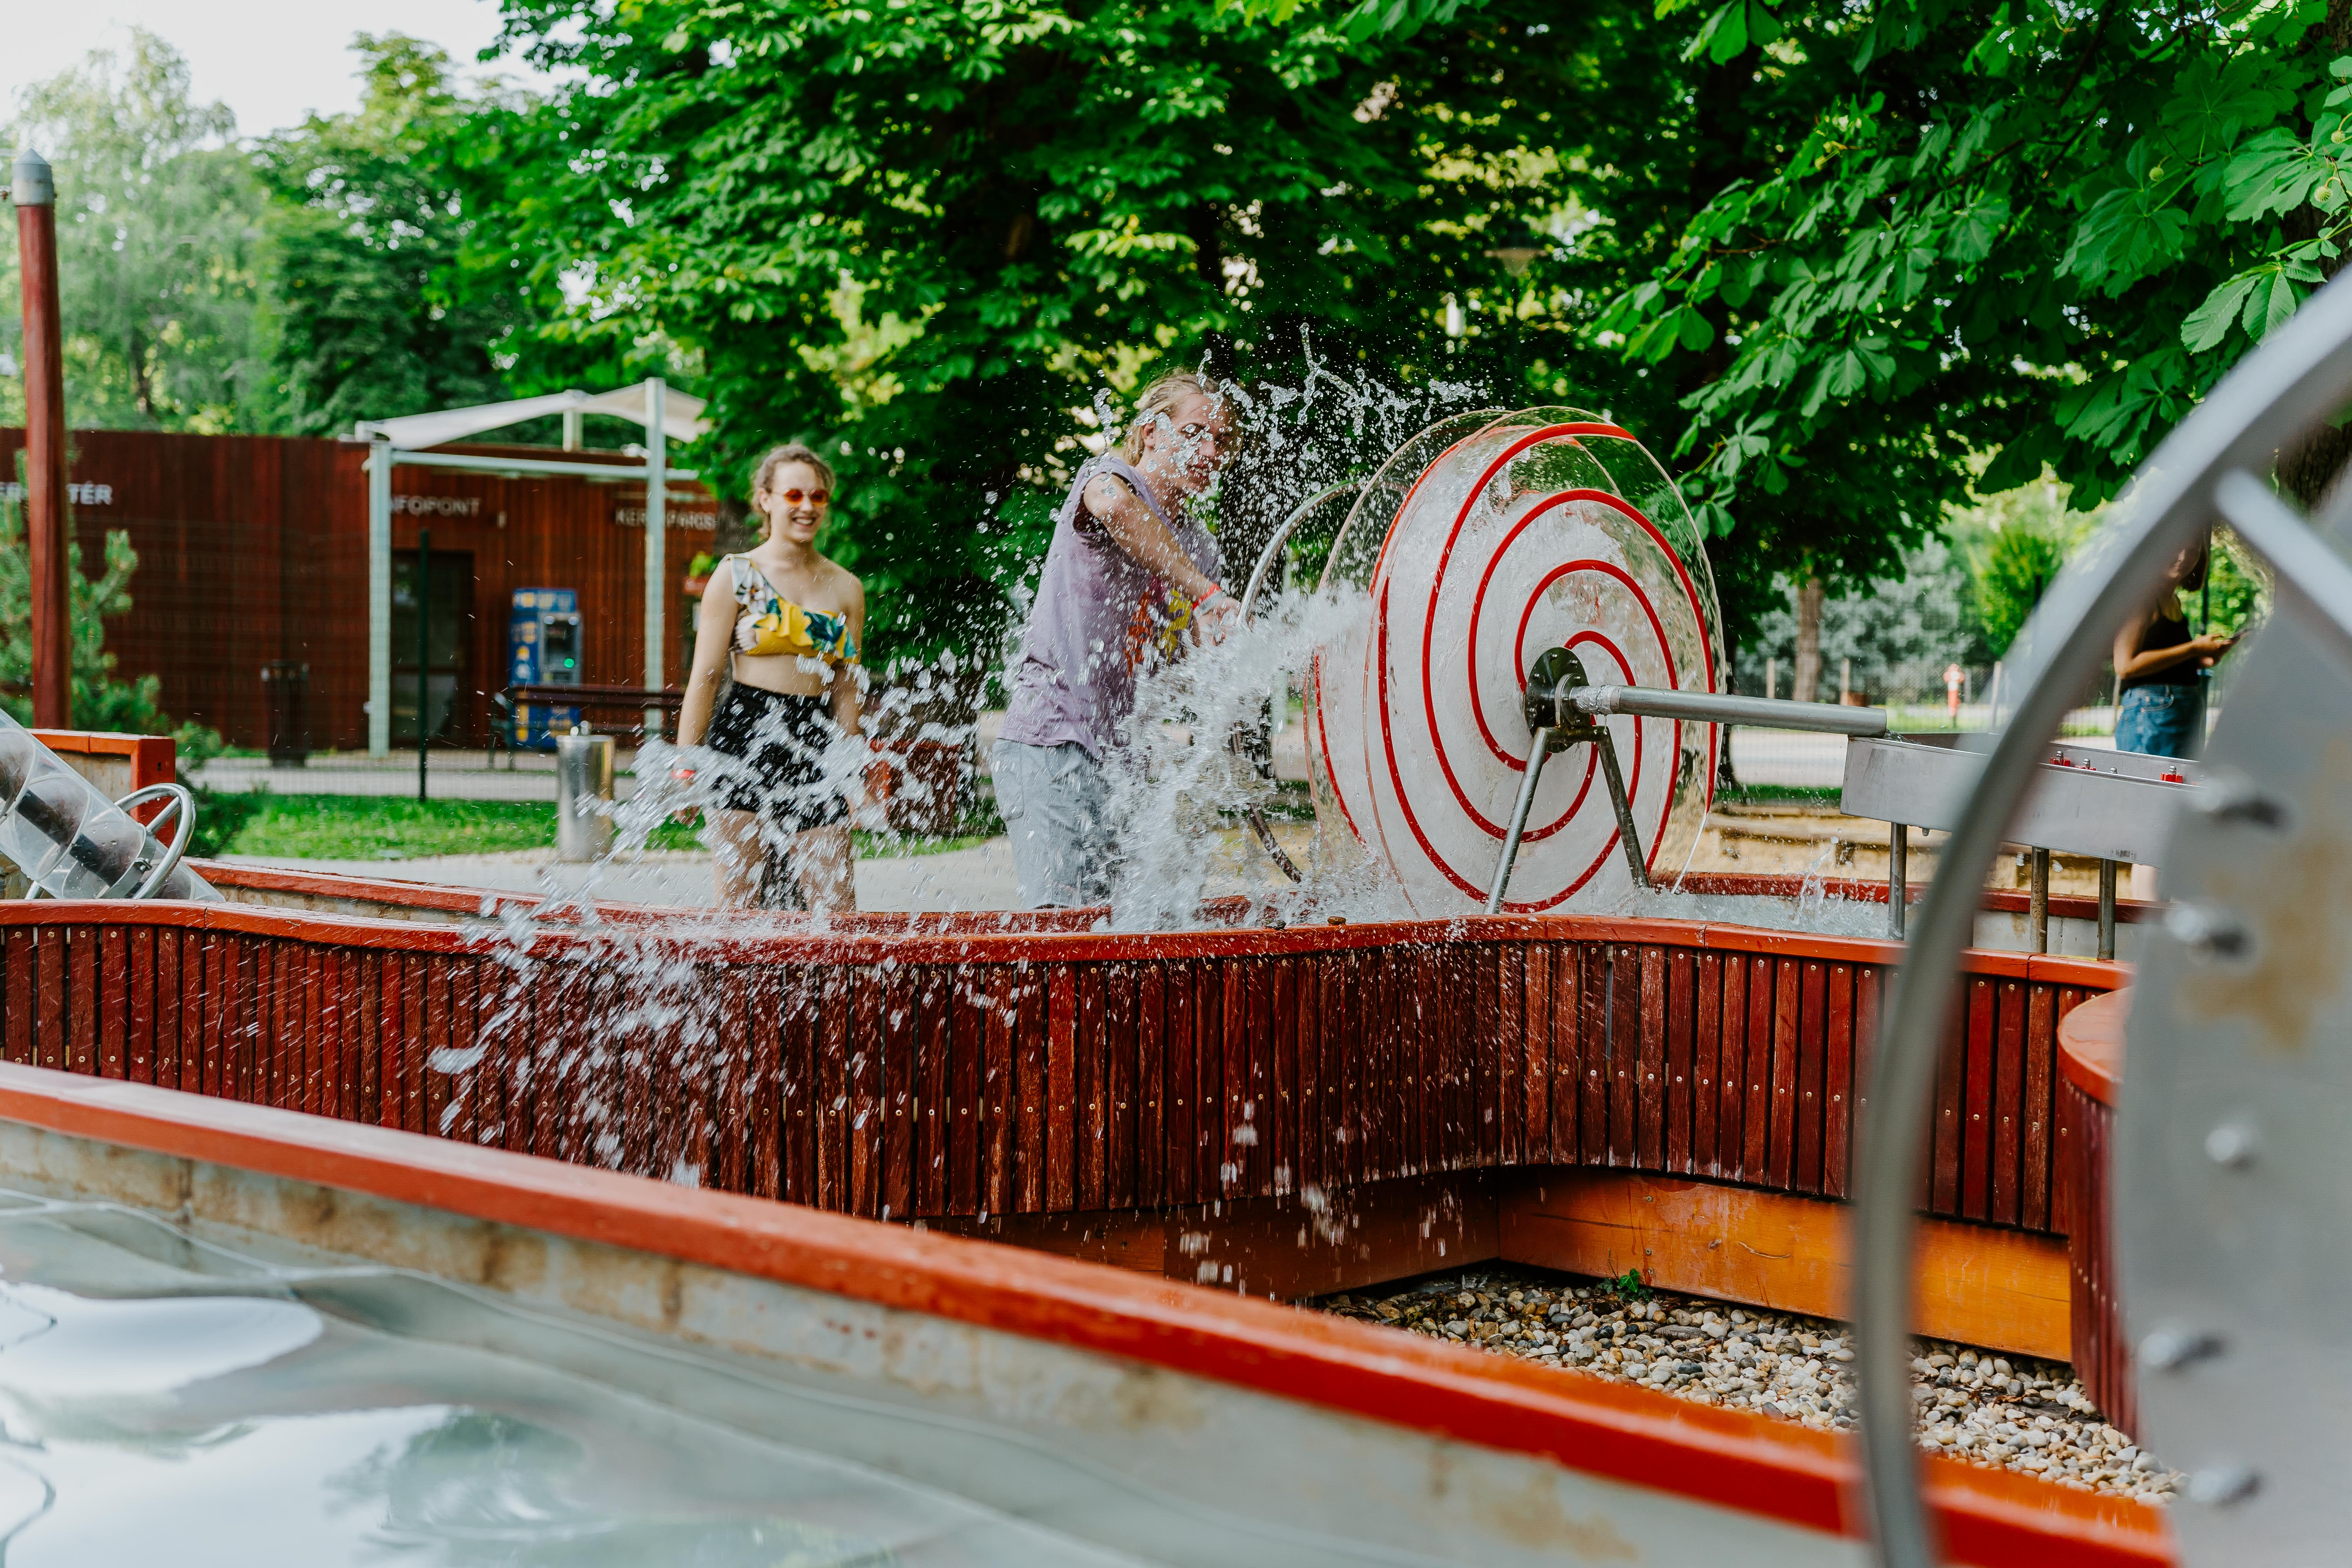 A vizes játszóterektől az óriáscsúszdákon át a balatoni legendákig – A gyerekek kedvencei a Balaton északi partján